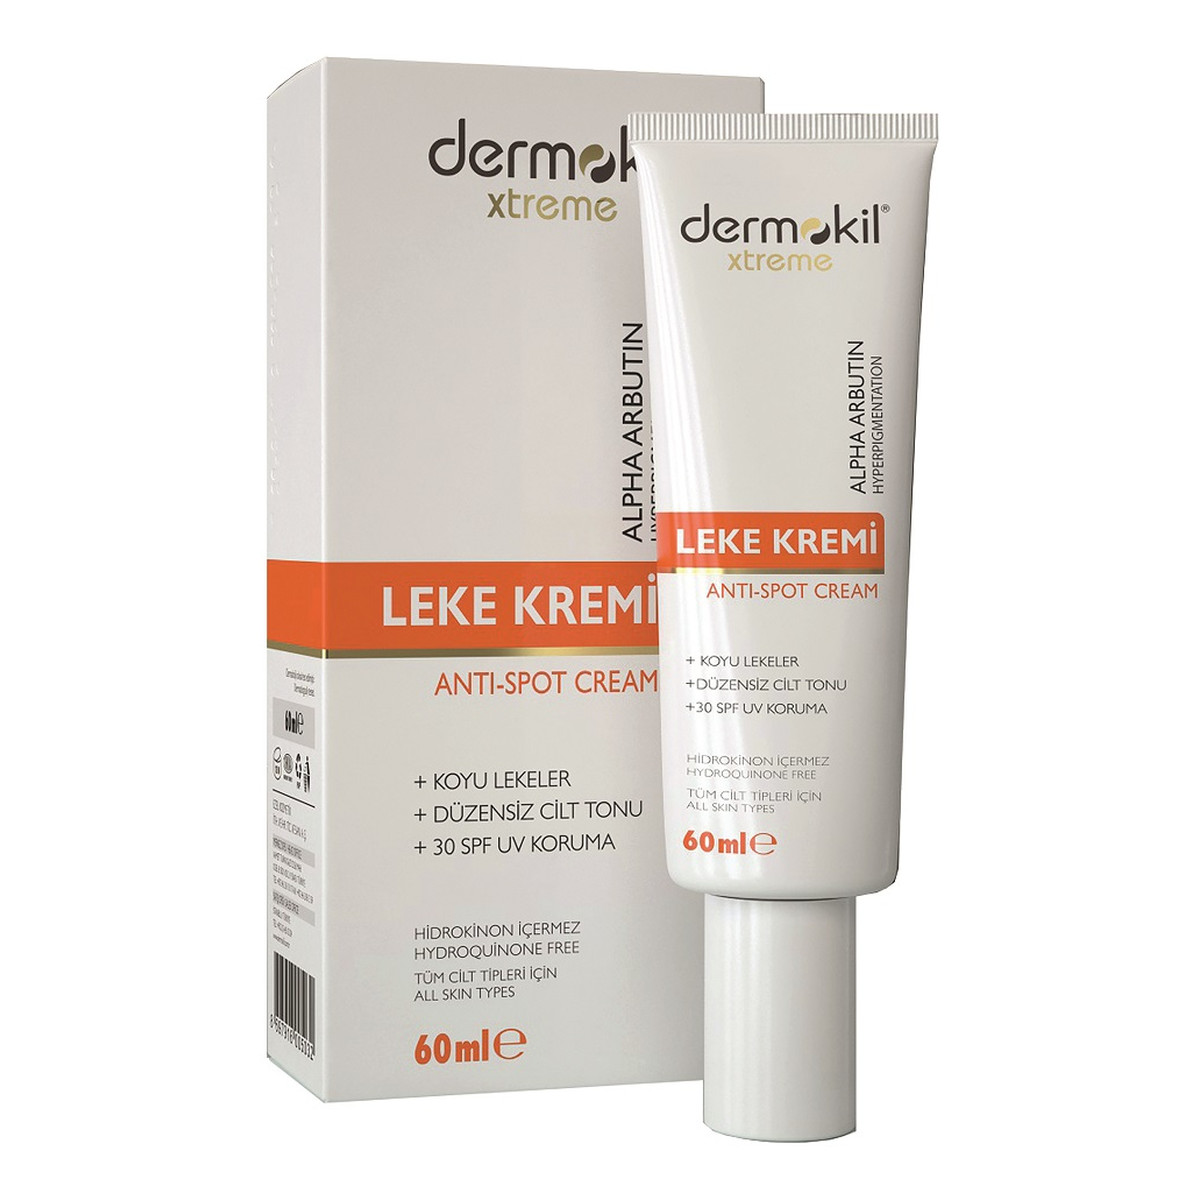 Dermokil Xtreme Anti-Spot Cream lekki Krem przeciw przebarwieniom 60ml